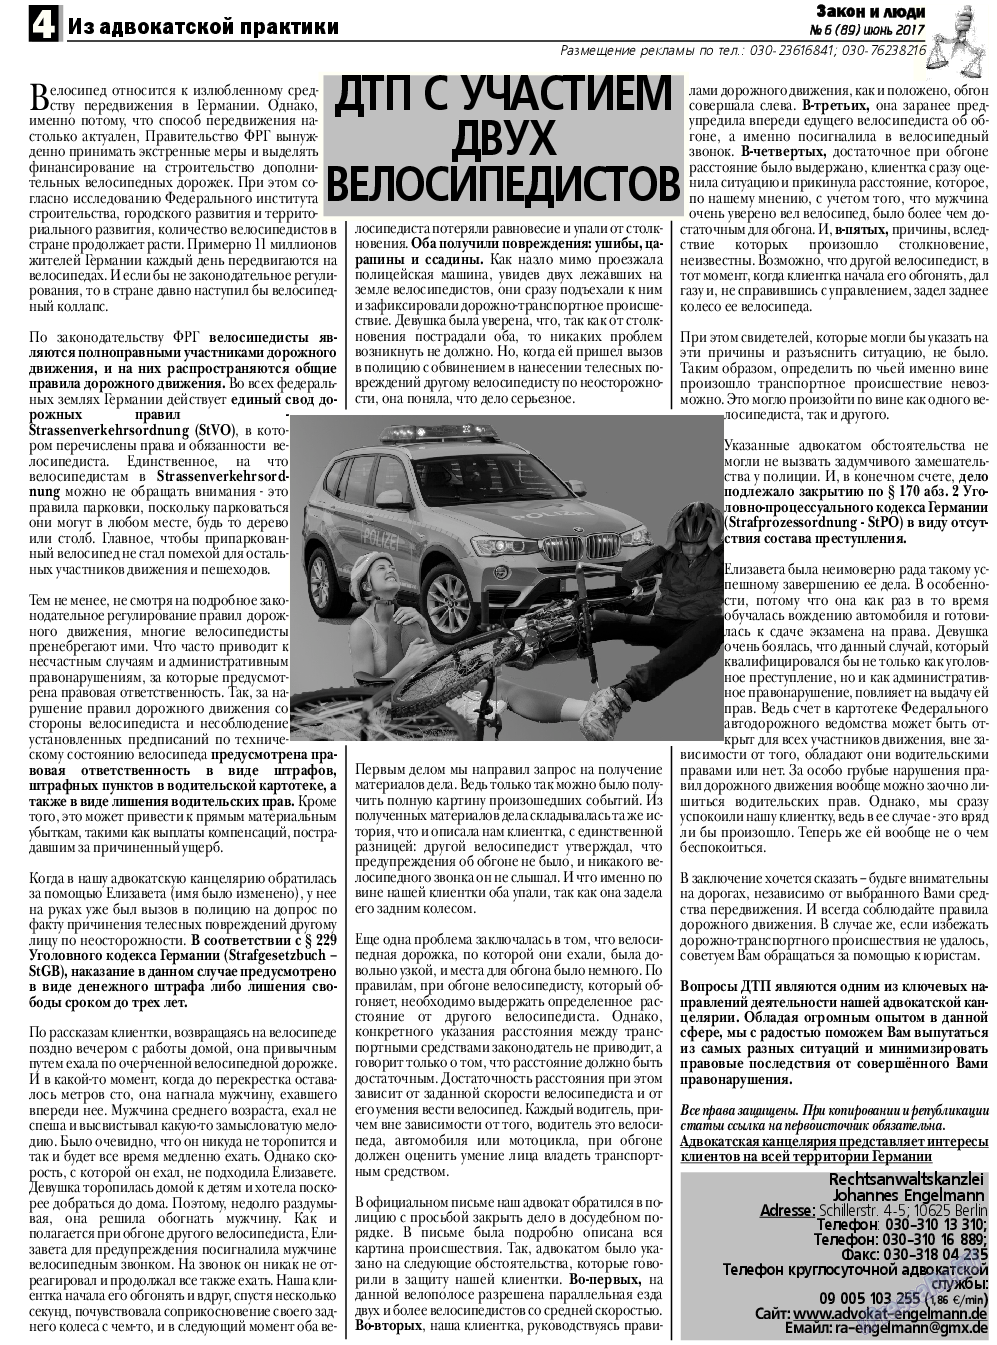 Закон и люди, газета. 2017 №6 стр.4